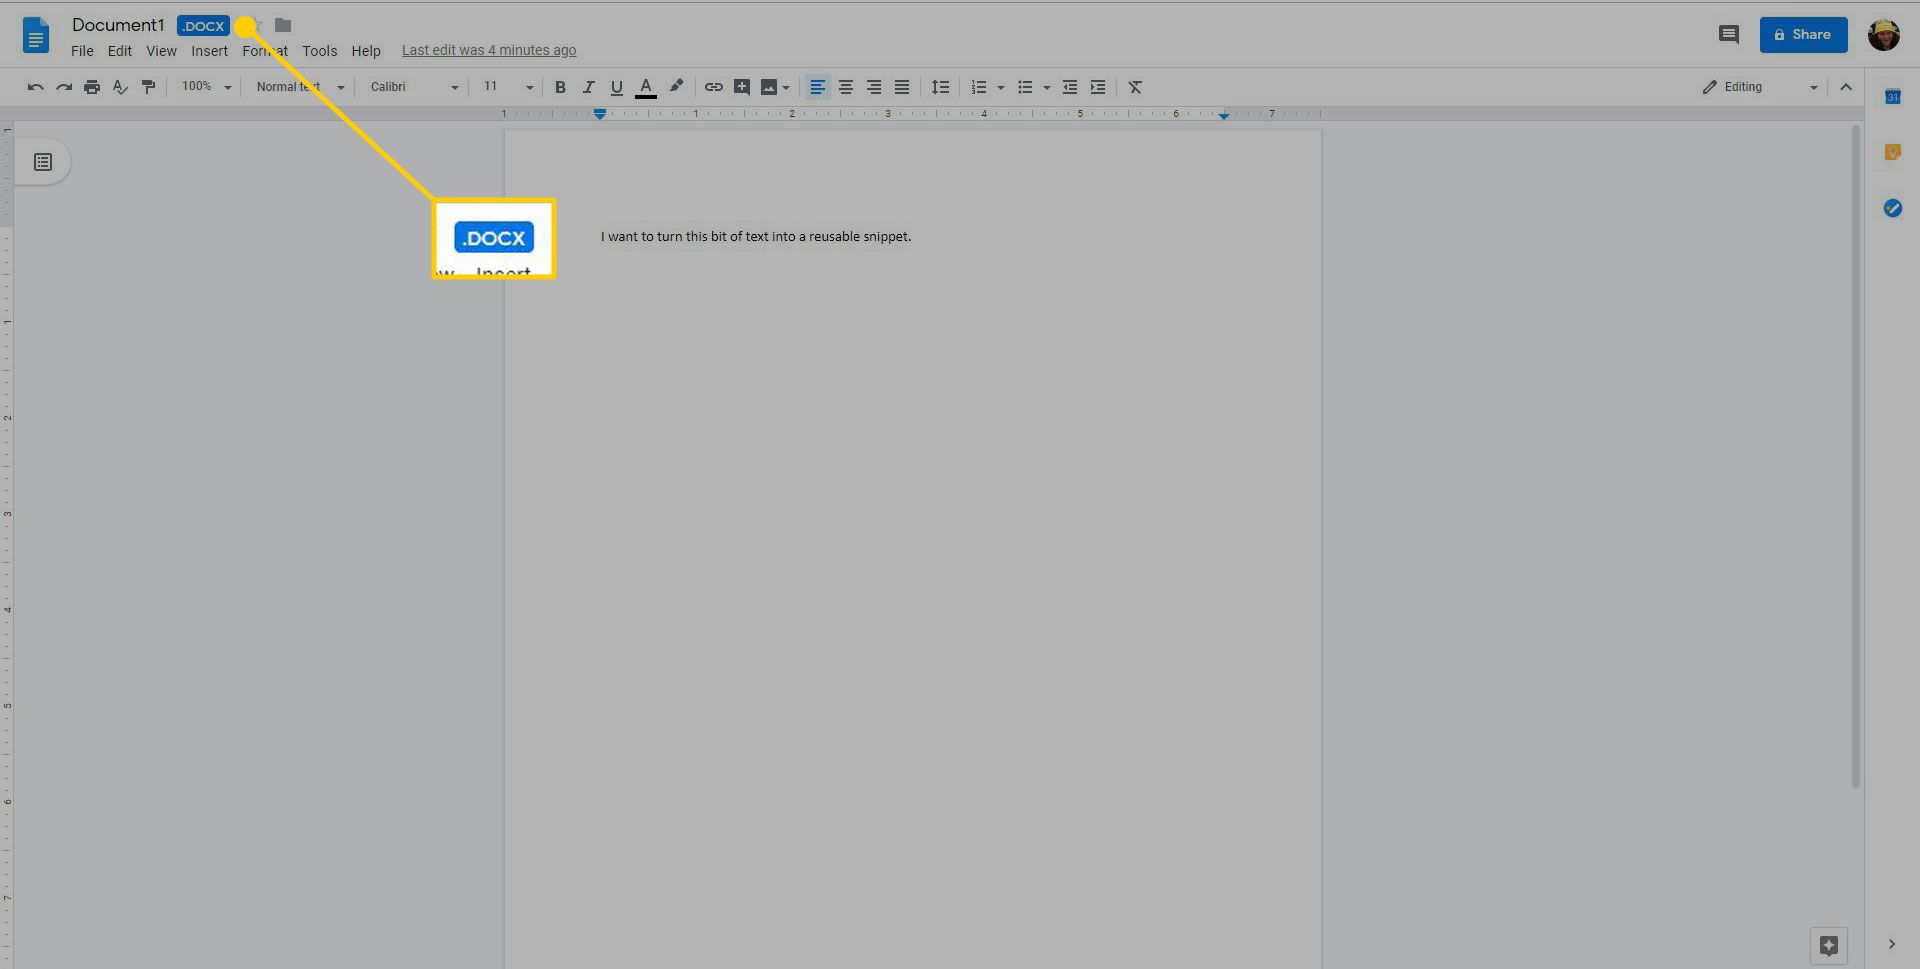 Ett Word-dokument öppnat i Google Drive med DOCX-tillägget markerat